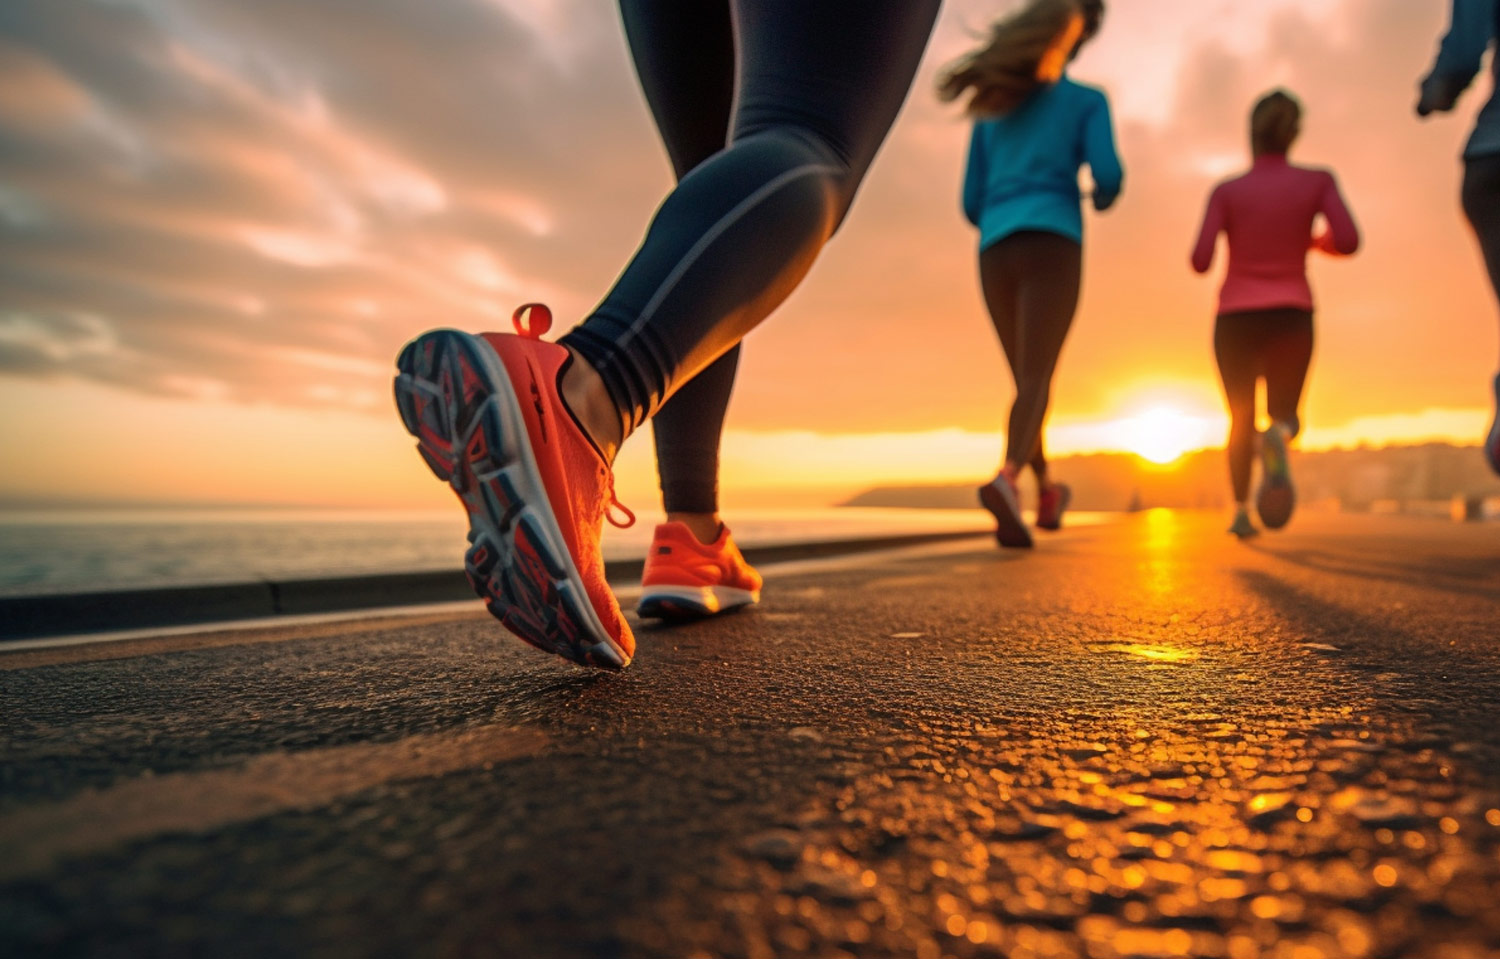 Exercise Tips for Running